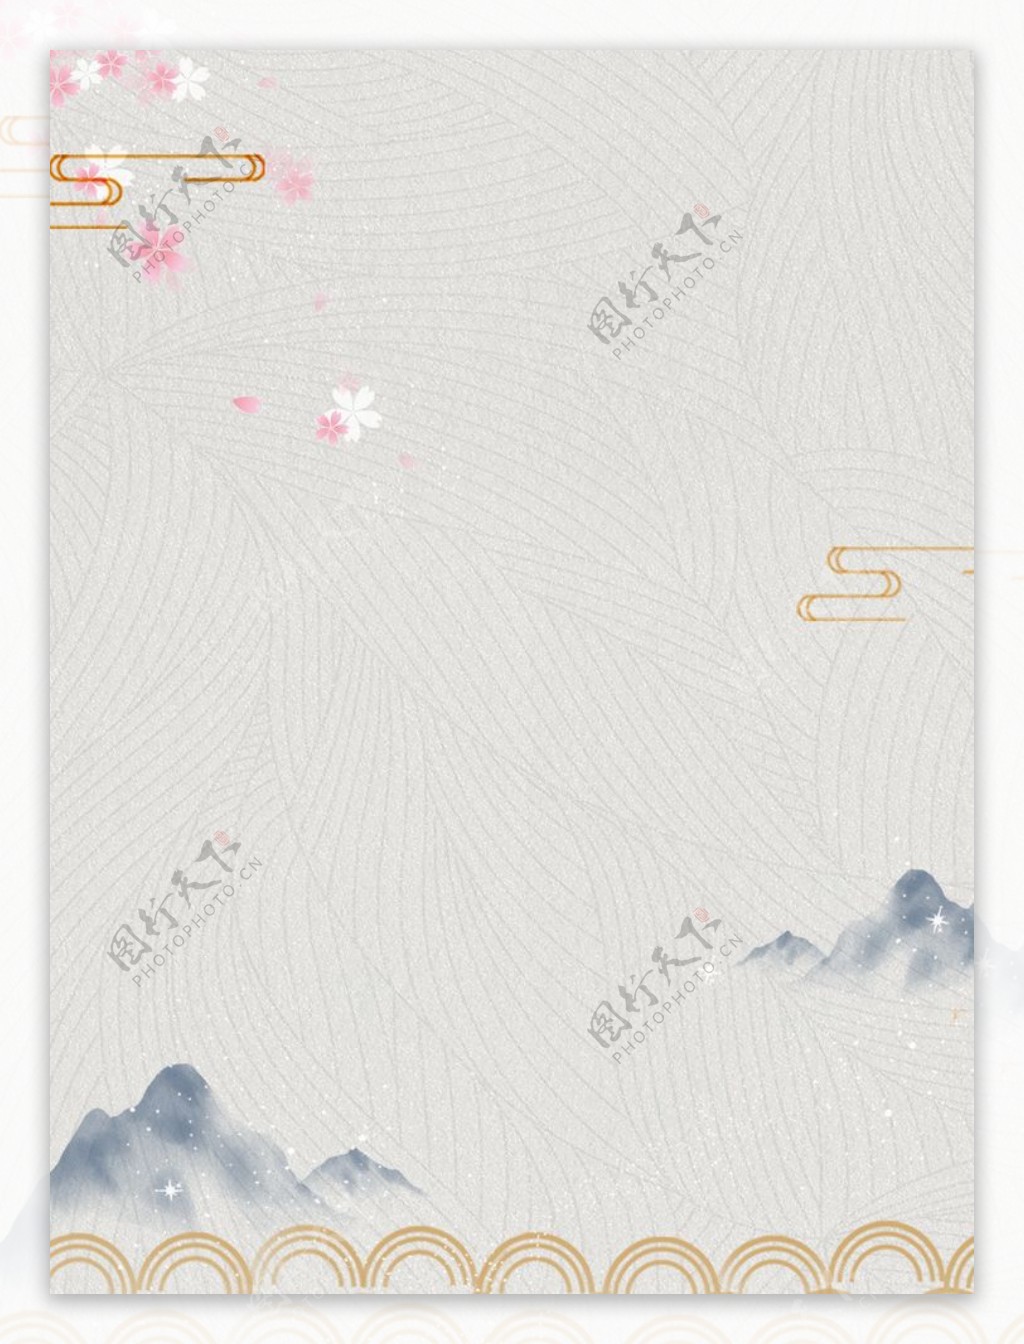 中国风水彩梅花背景图片